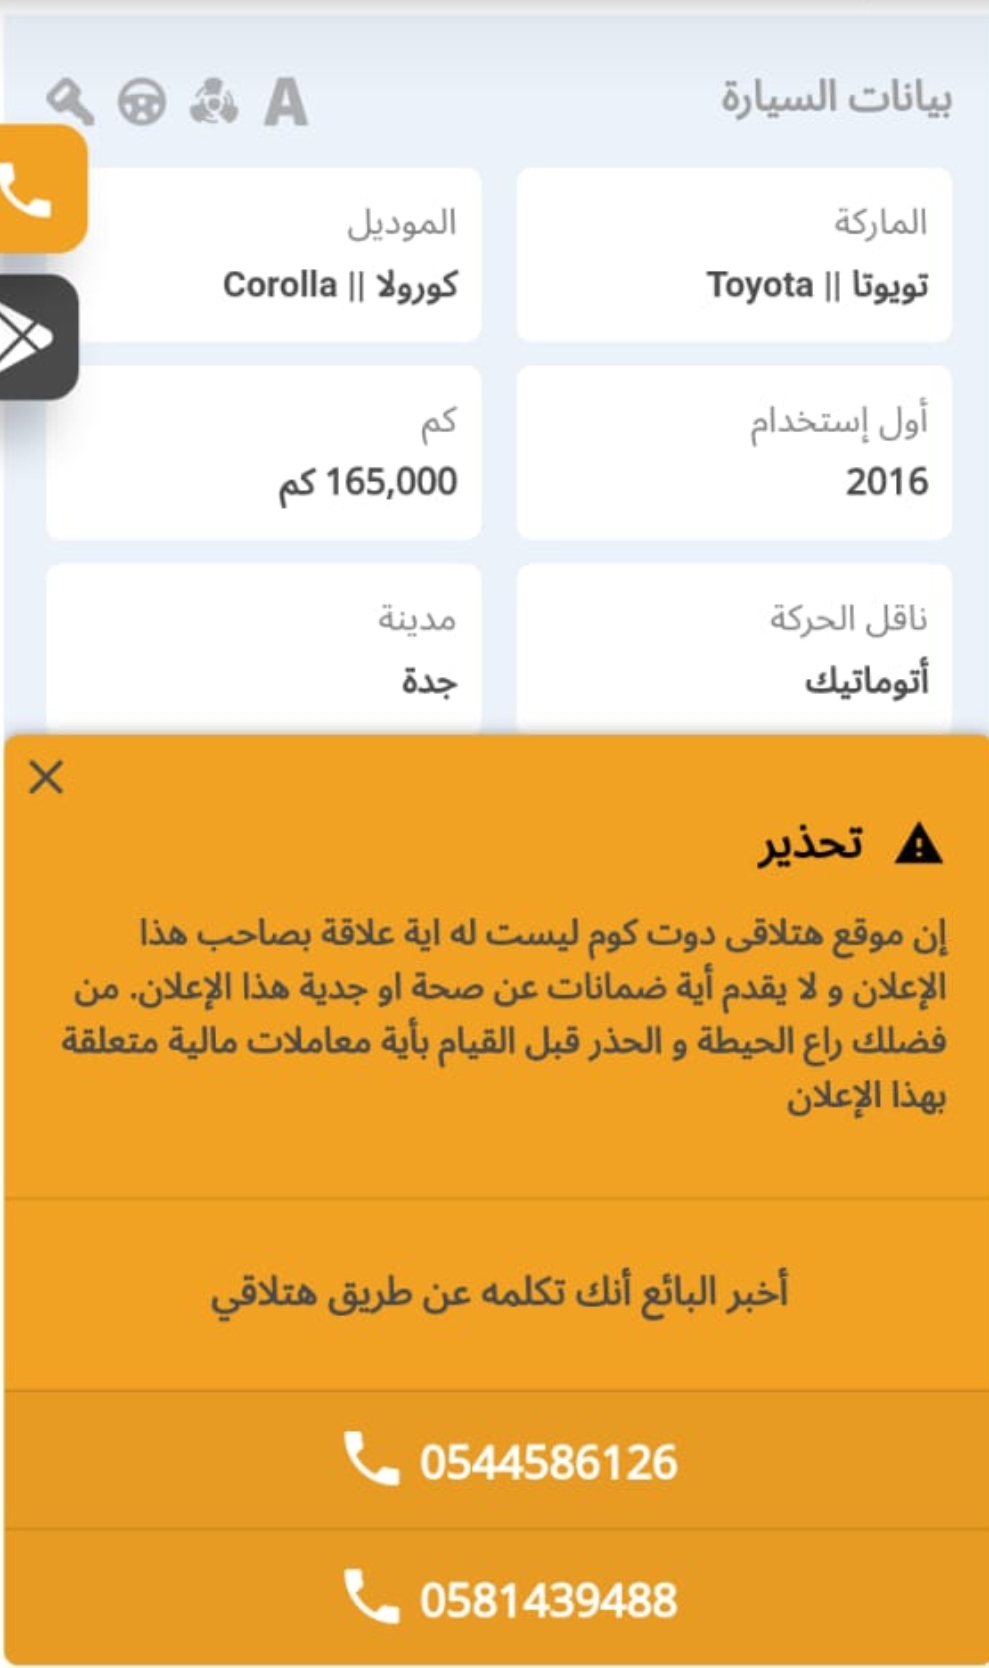 Screenshot ٢٠٢٣٠٥١٨ ١٨٣٤٤٢ WhatsApp - مدونة التقنية العربية